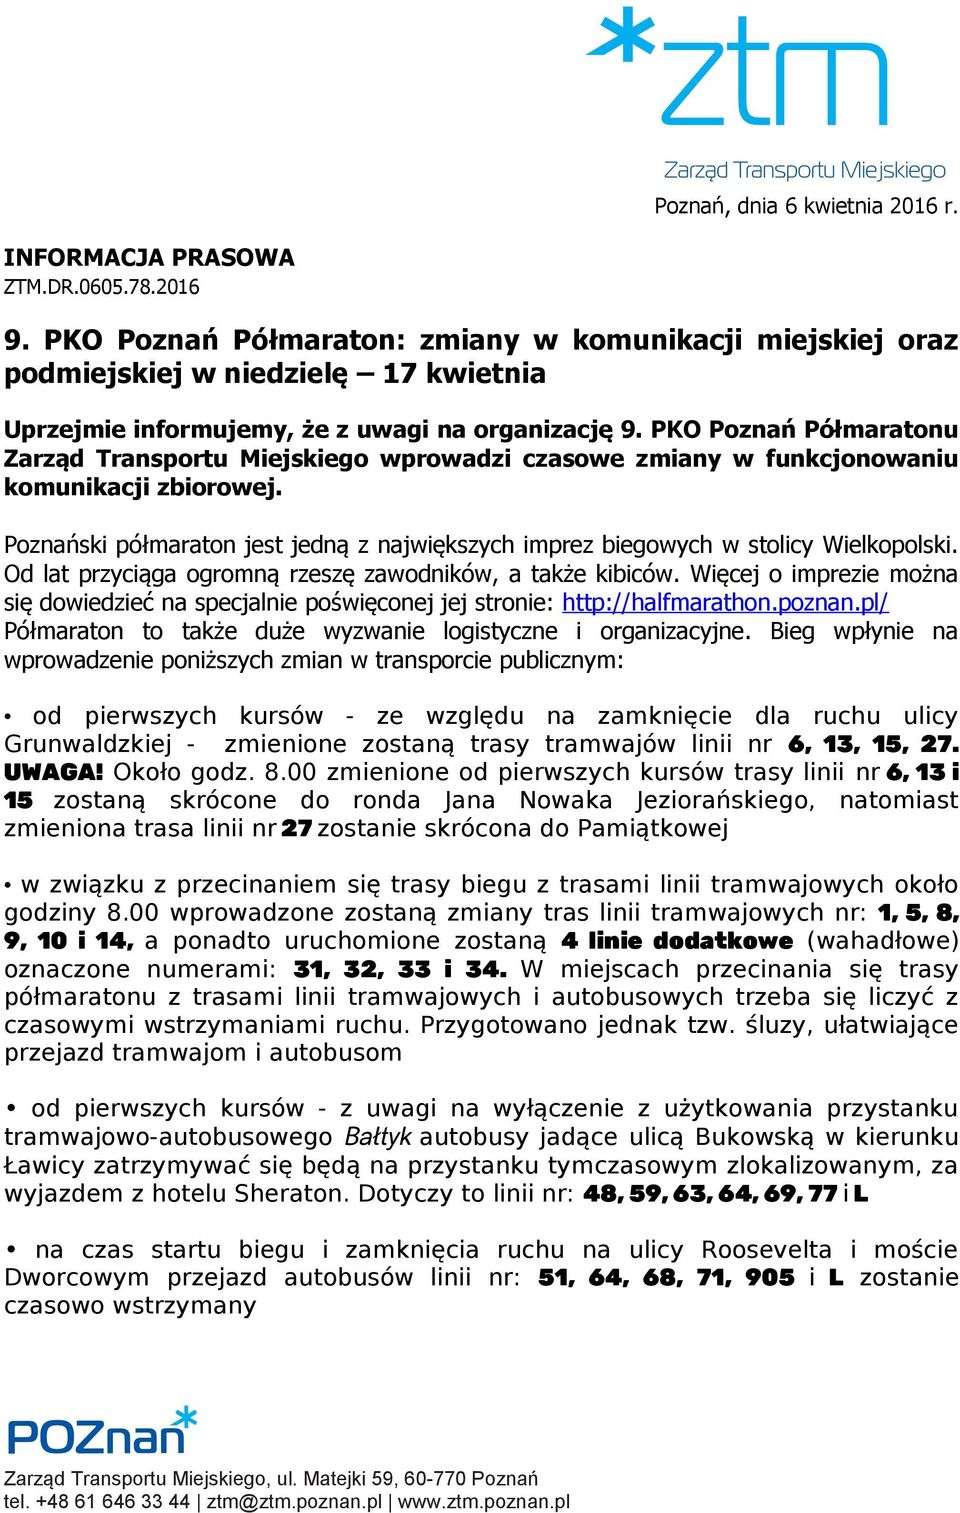 PKO Poznań Półmaratonu Zarząd Transportu Miejskiego wprowadzi czasowe zmiany w funkcjonowaniu komunikacji zbiorowej.